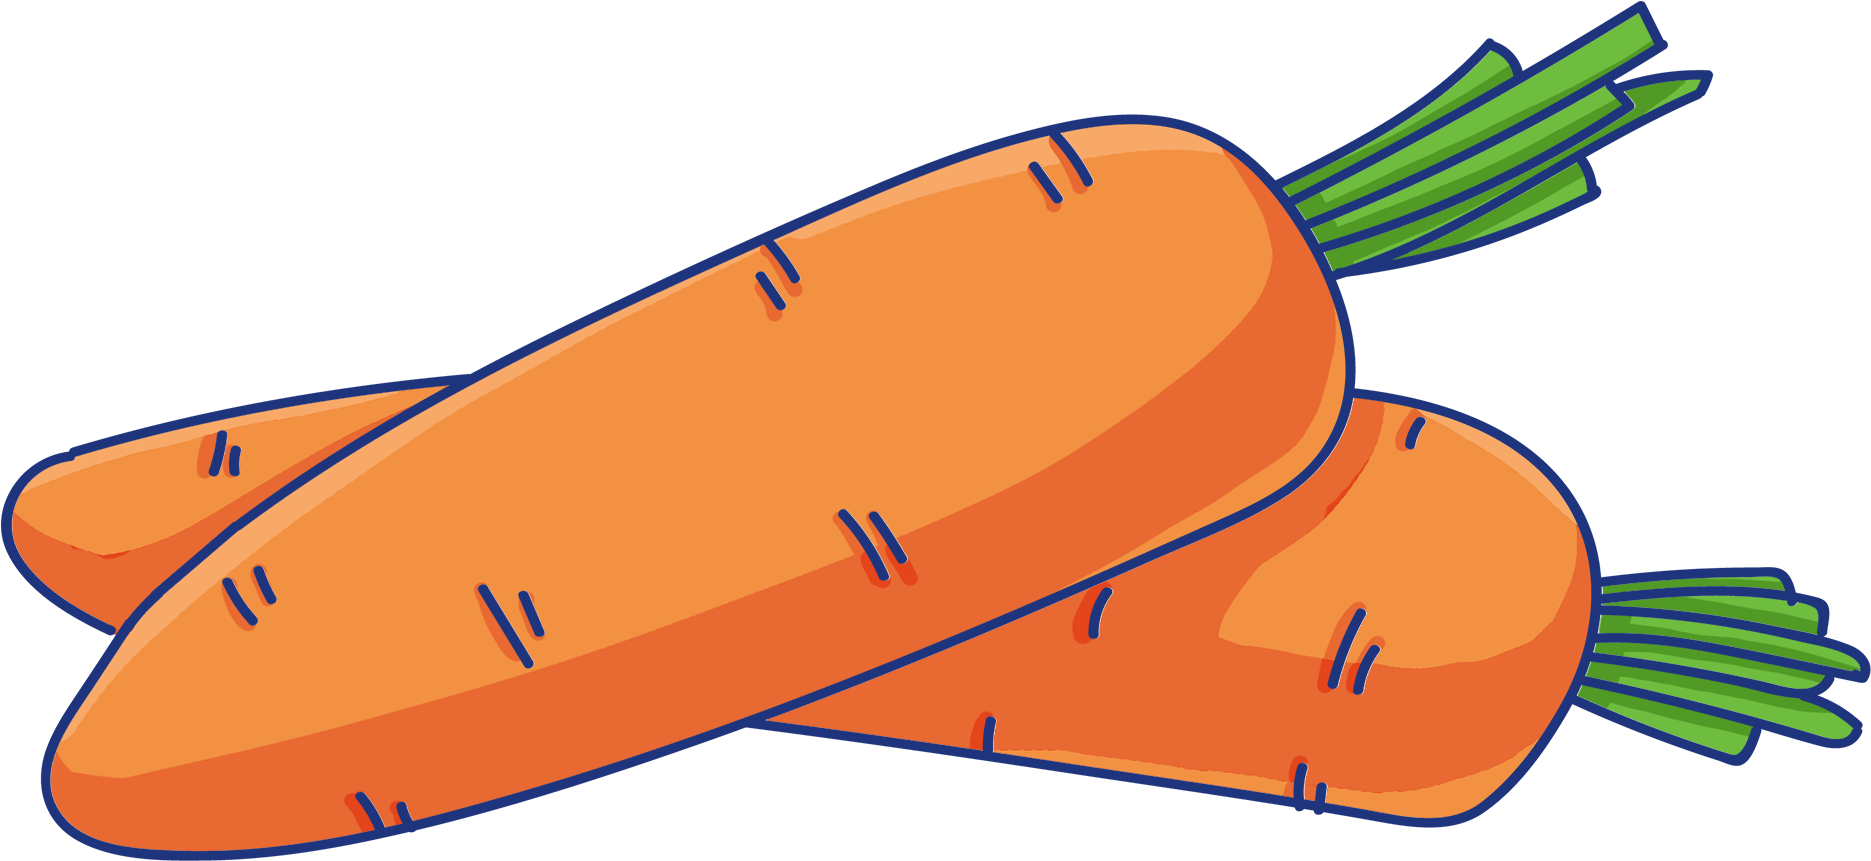 Маска на голову для детей морковка: как сделать бумажную морковь на голову ребенку